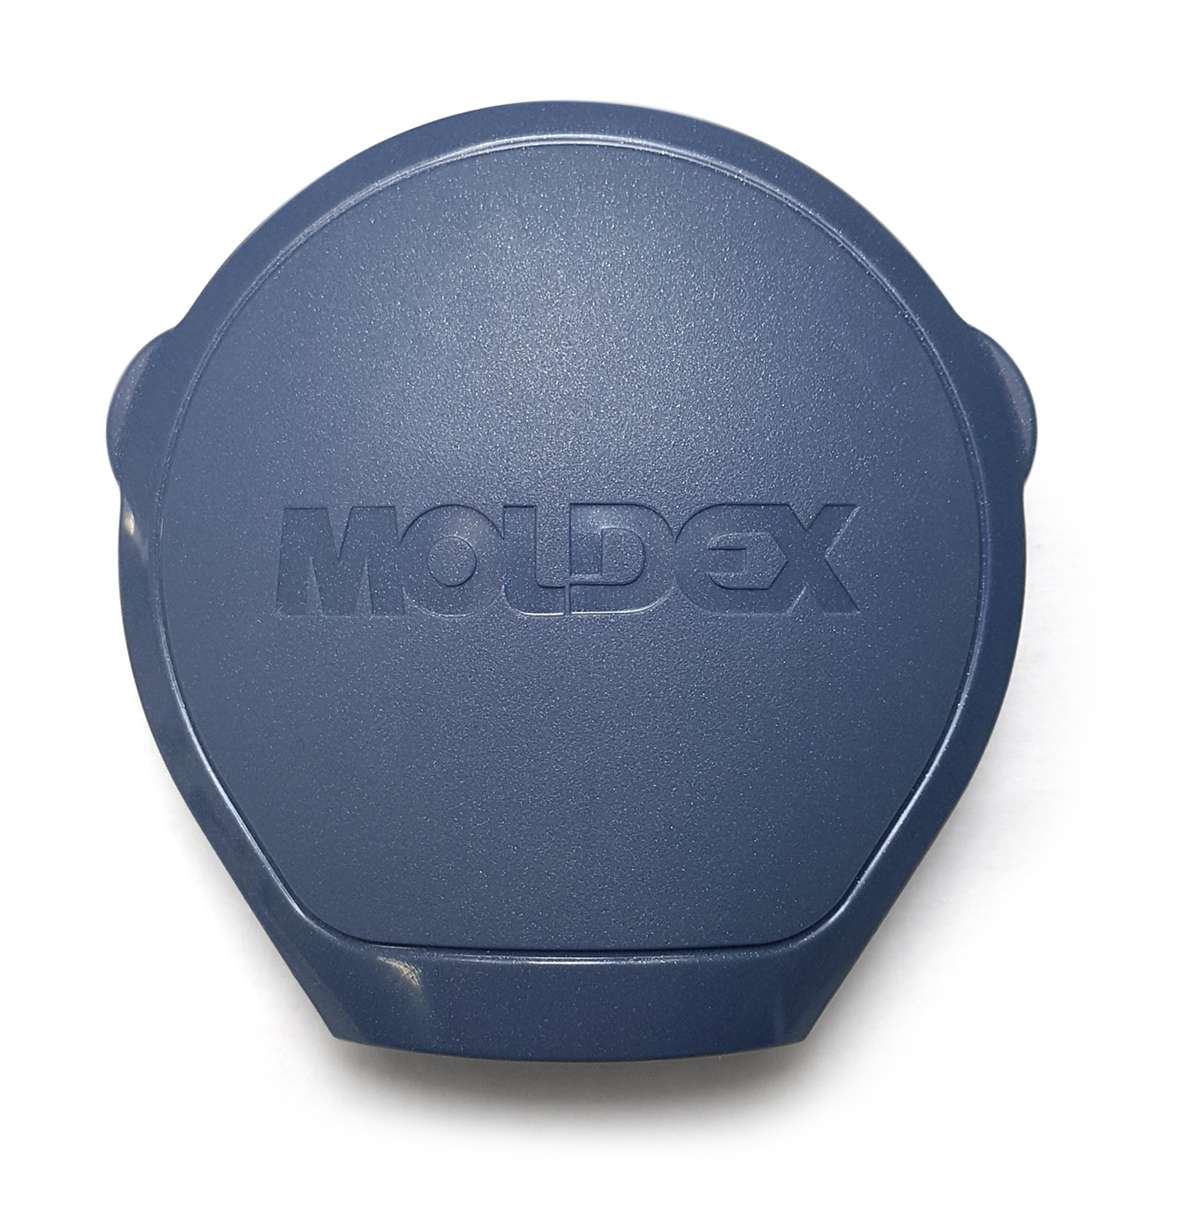 Exhalation Valve Cover Series 9000 Moldex